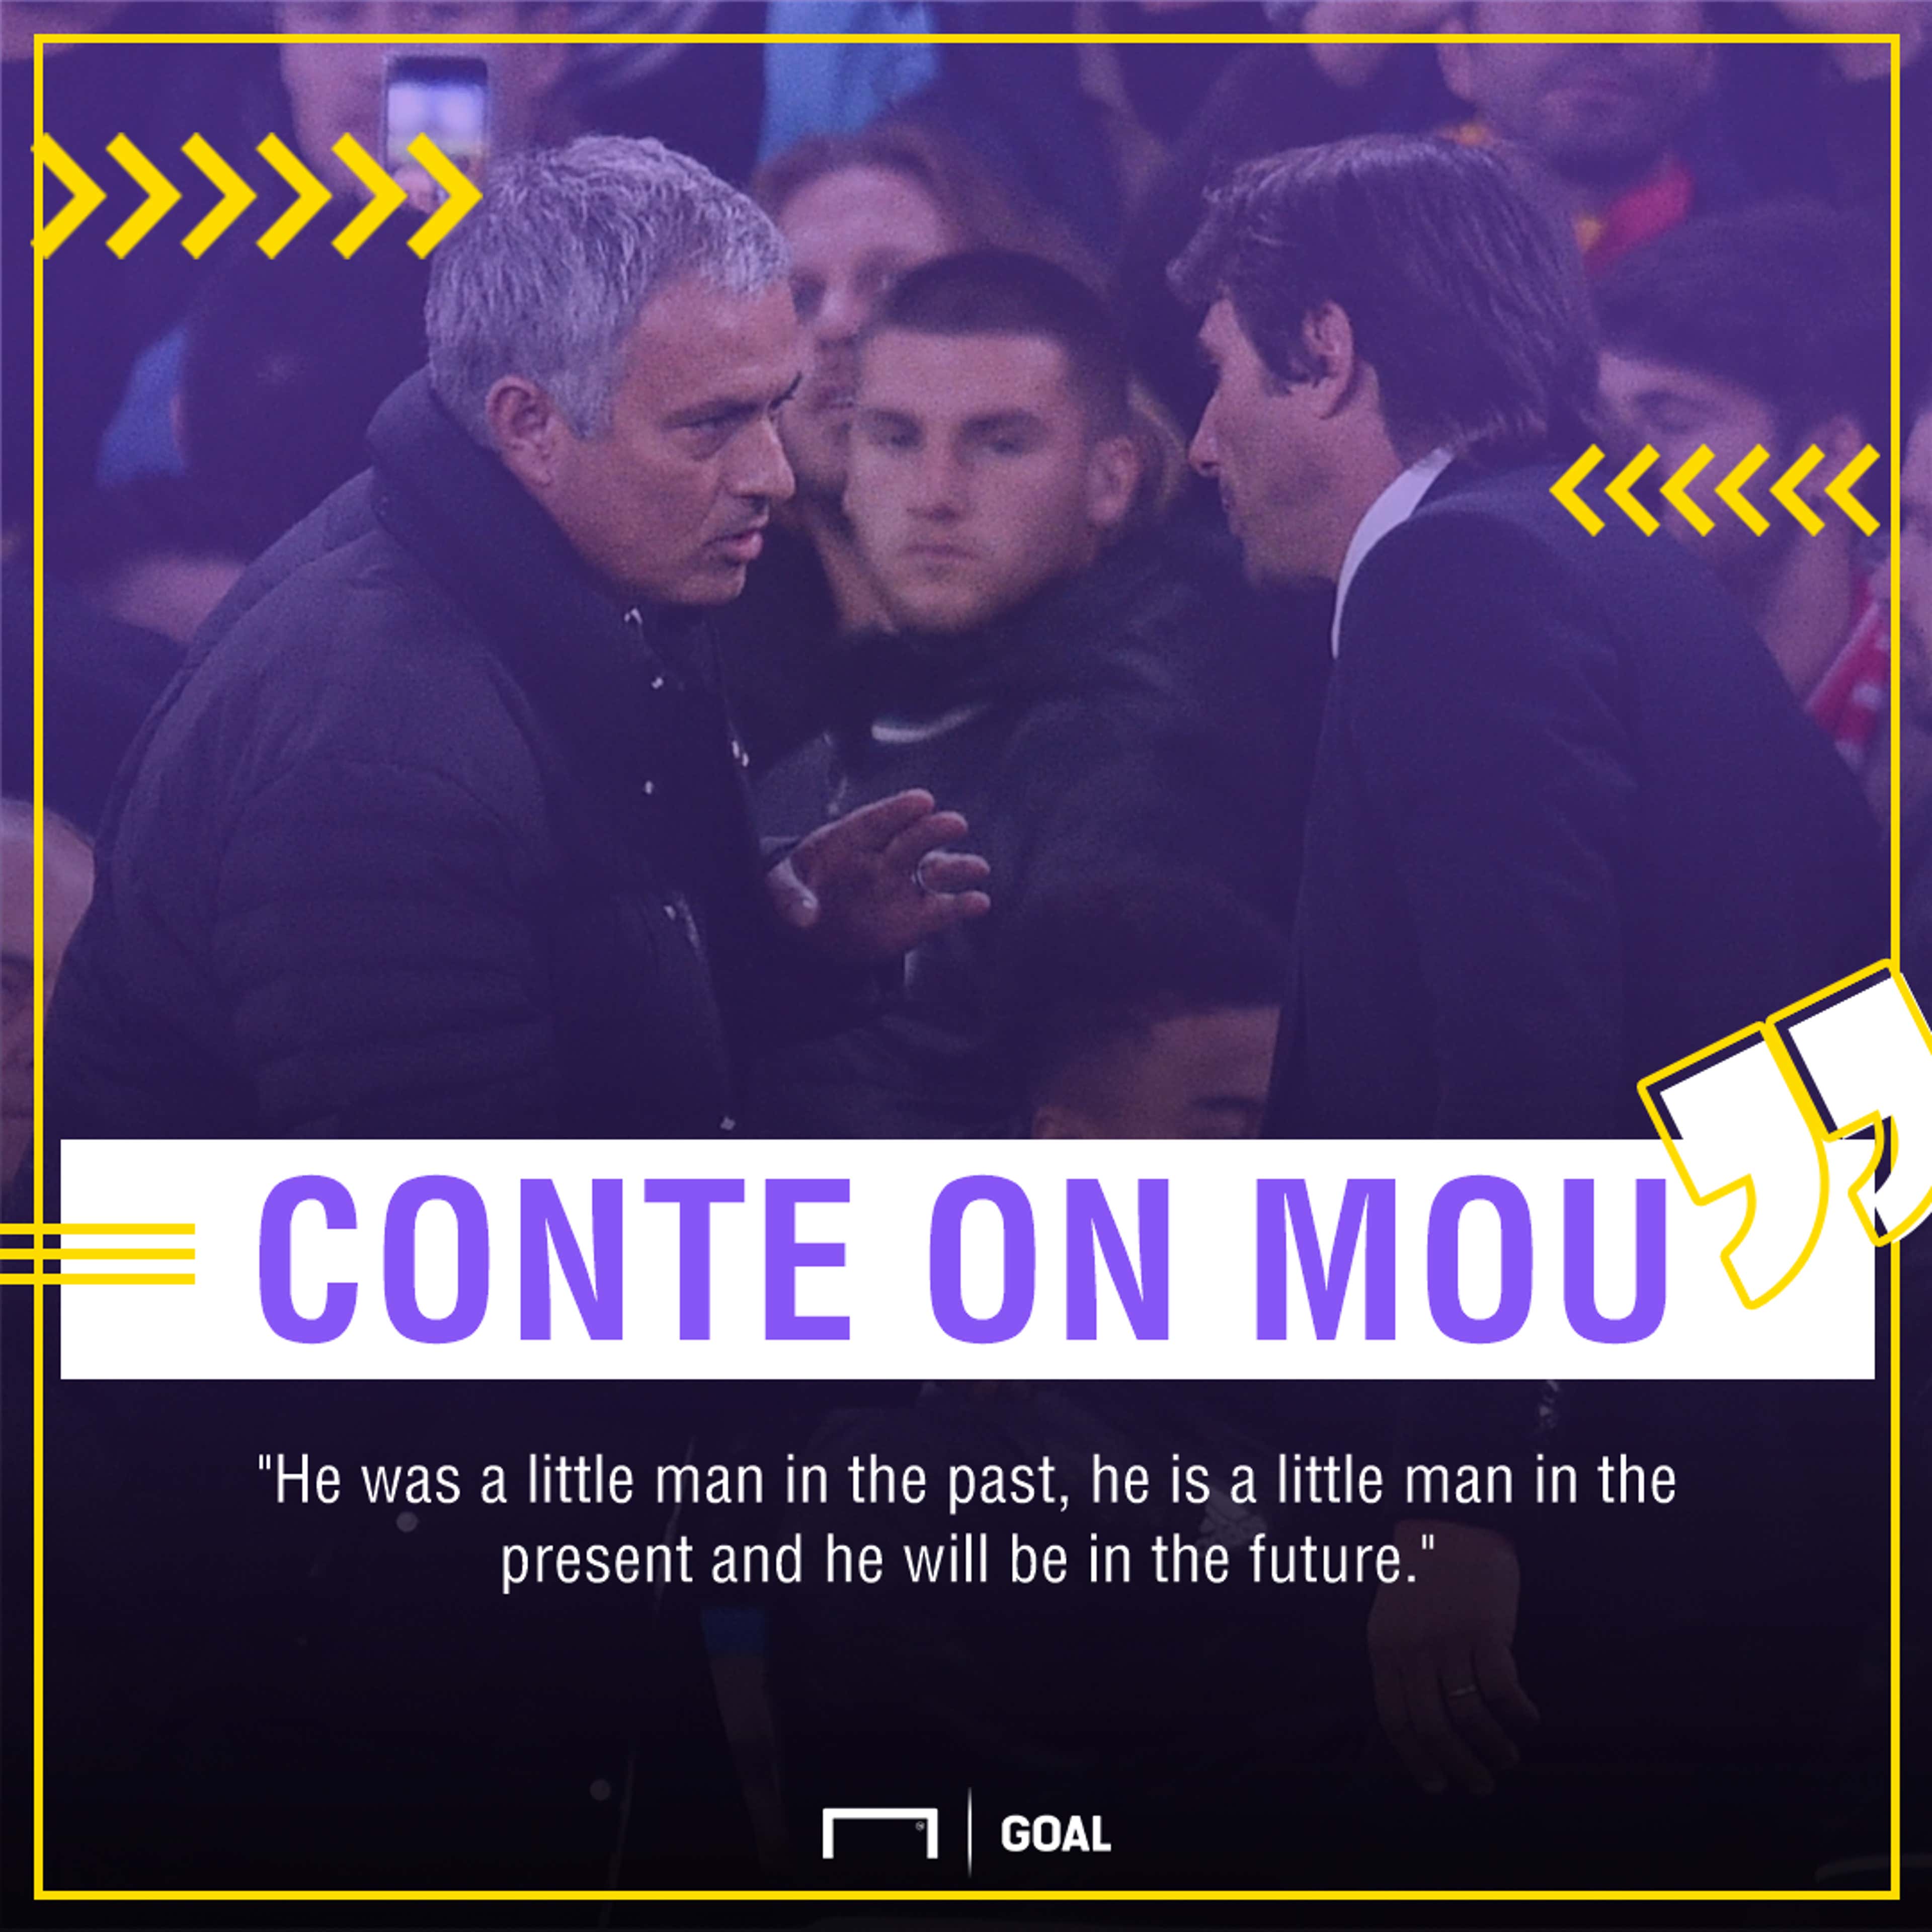 Conte on Mourinho